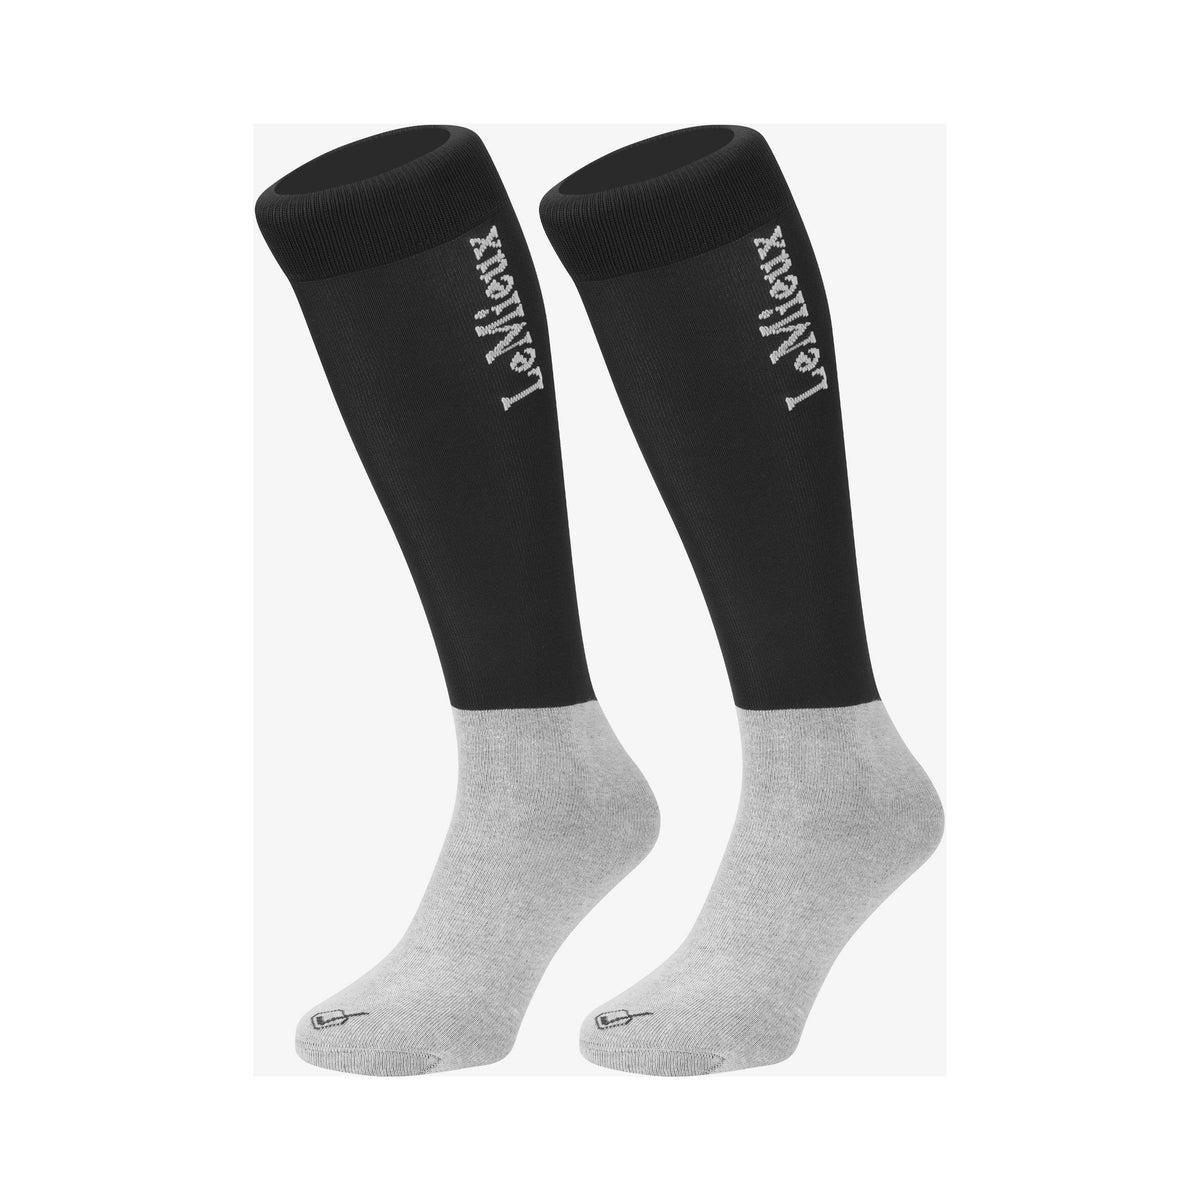 LEMIEUX LeMieux Competition Socks - Twin Pack in Black